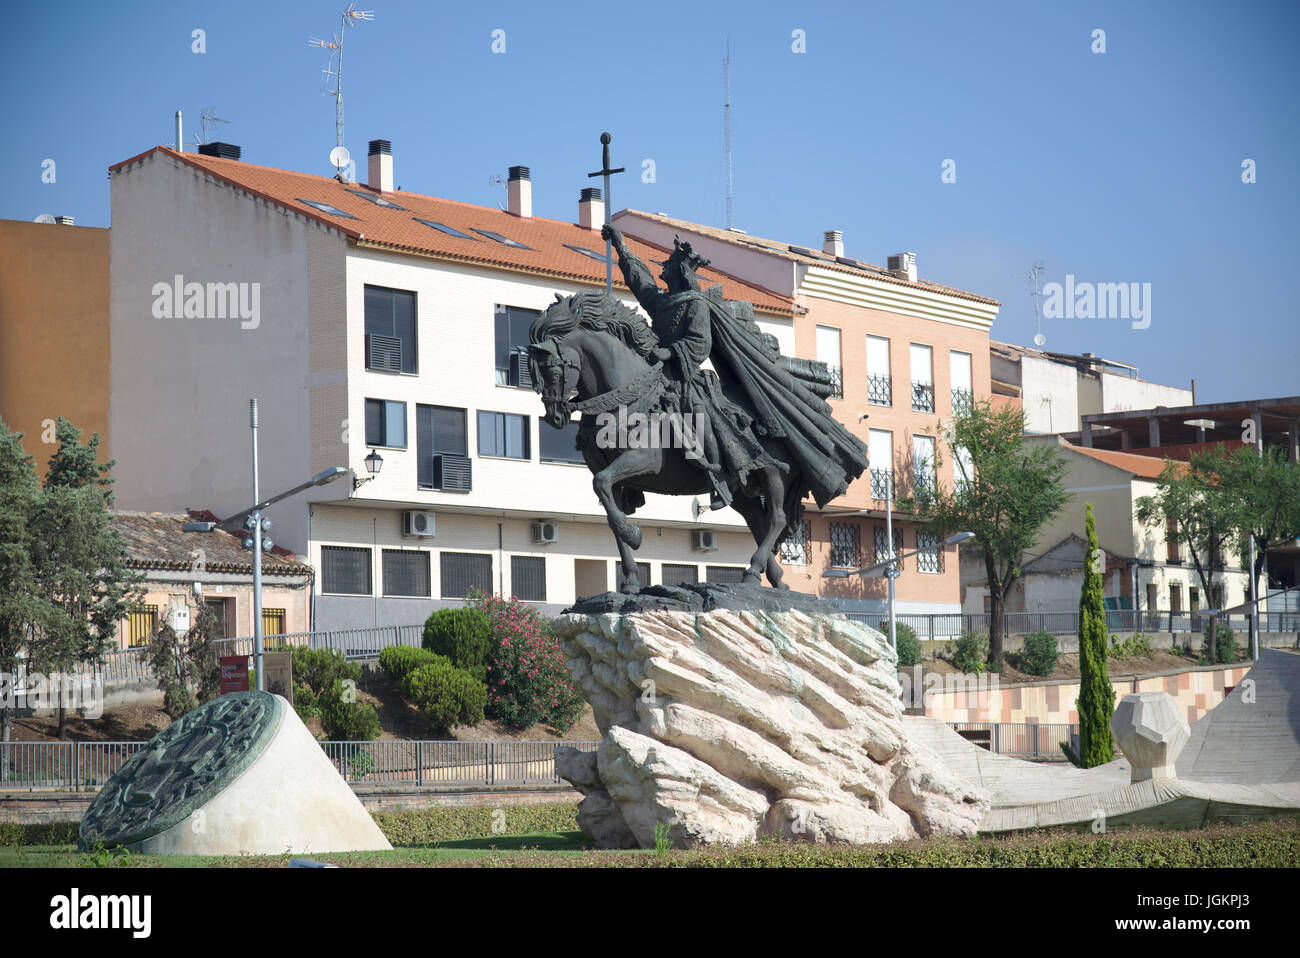 Statua equestre di Alfonso VI, re cristiano che riconquistato Toledo da musulmani, collocato sul Salto del Caballo quartiere. Toledo Luglio 2017 Foto Stock